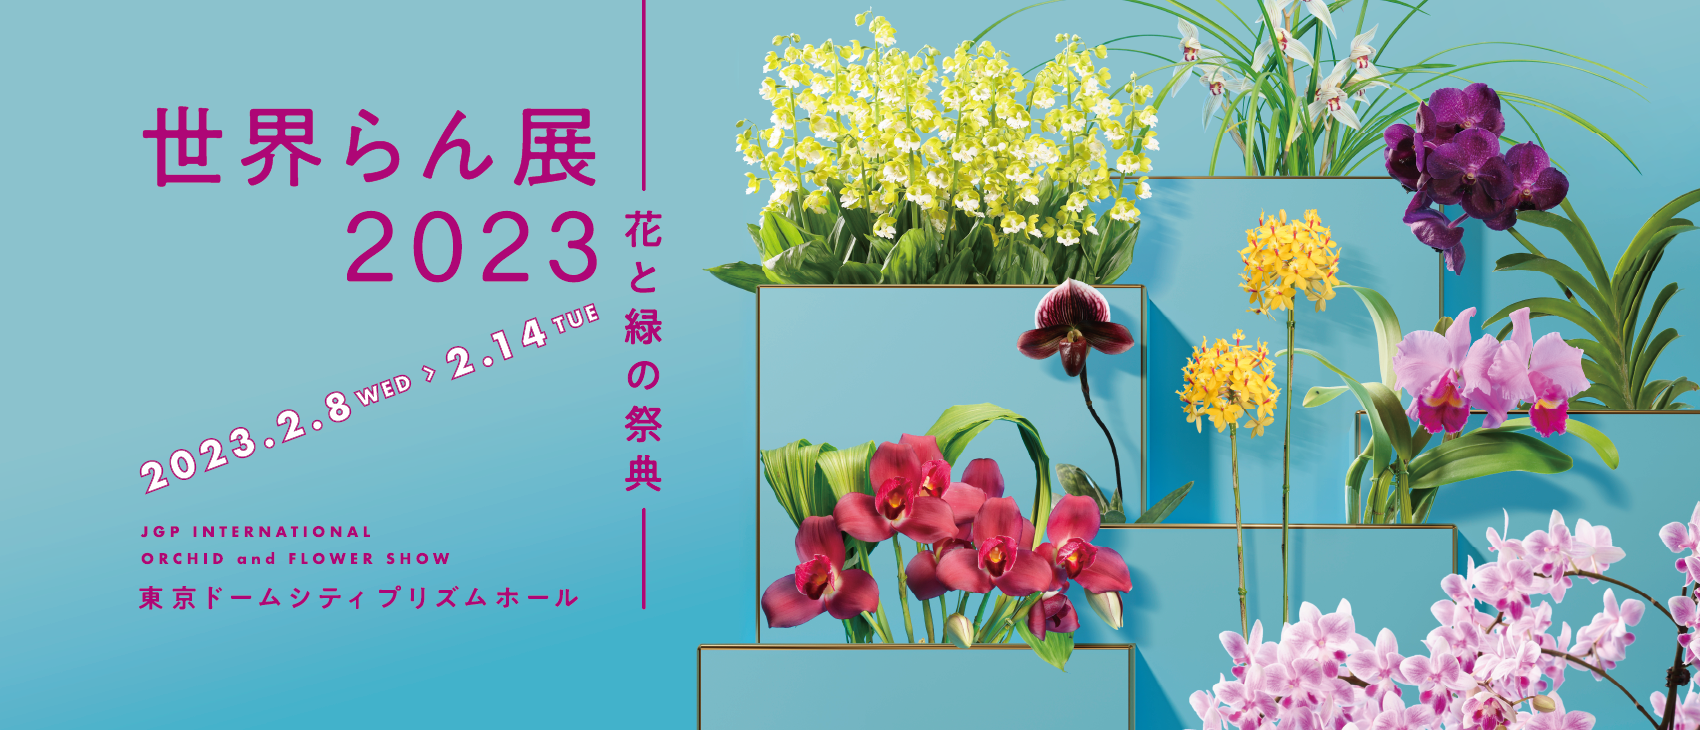 世界らん展2023  —花と緑の祭典—